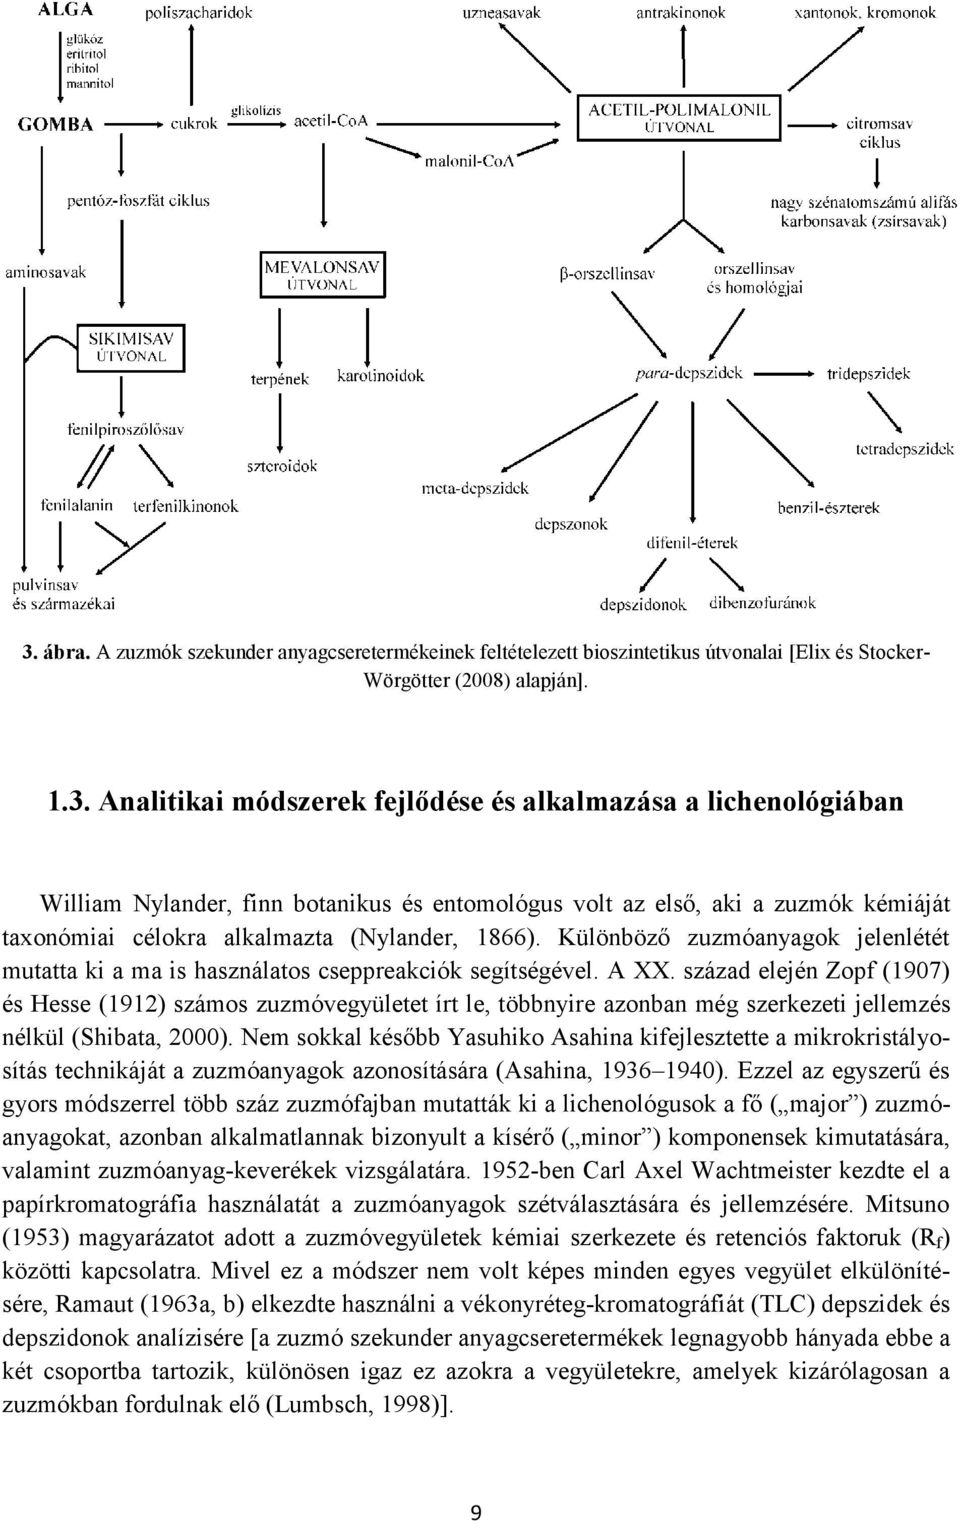 század elején Zopf (1907) és Hesse (1912) számos zuzmóvegyületet írt le, többnyire azonban még szerkezeti jellemzés nélkül (Shibata, 2000).